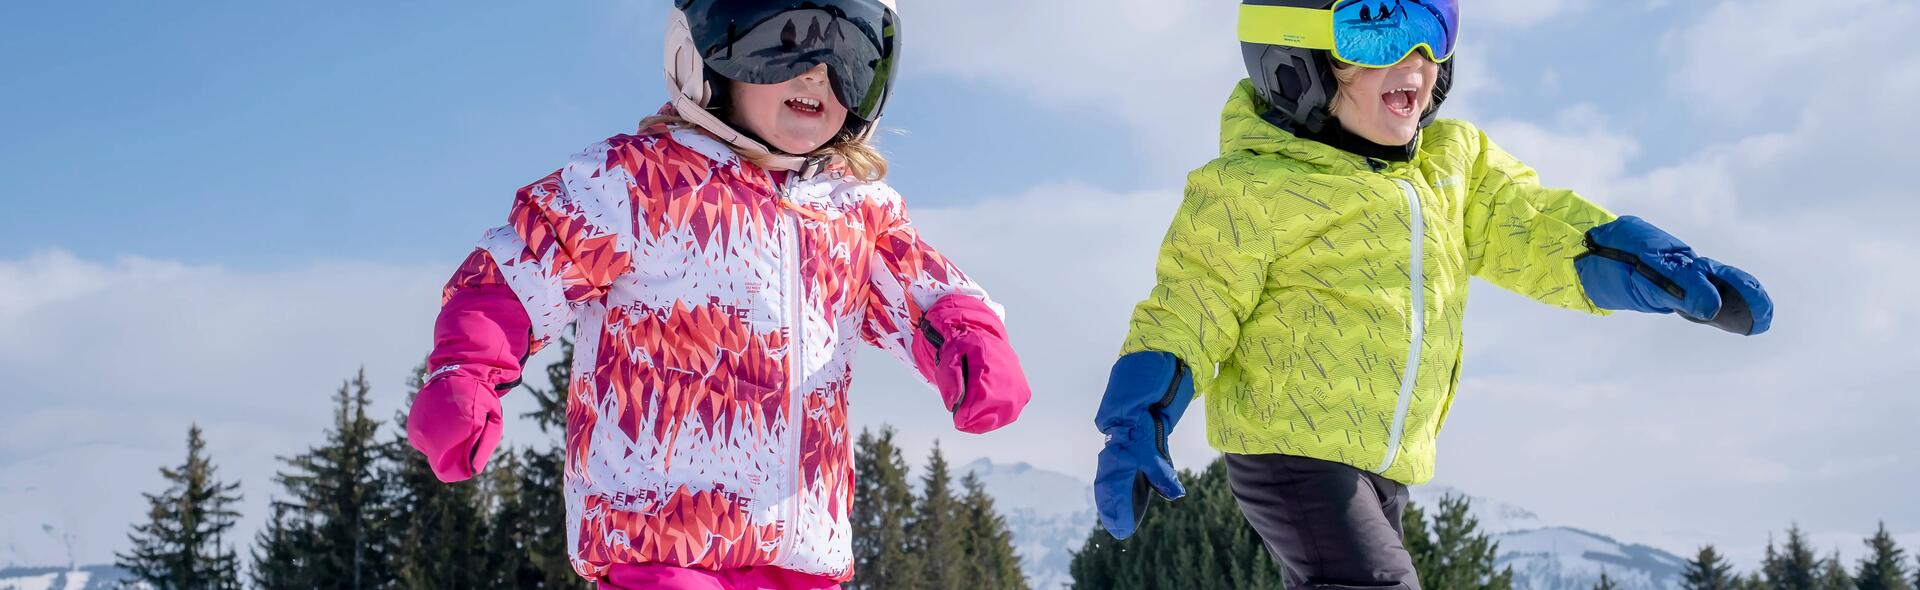 Como vestir adequadamente as crianças no ski